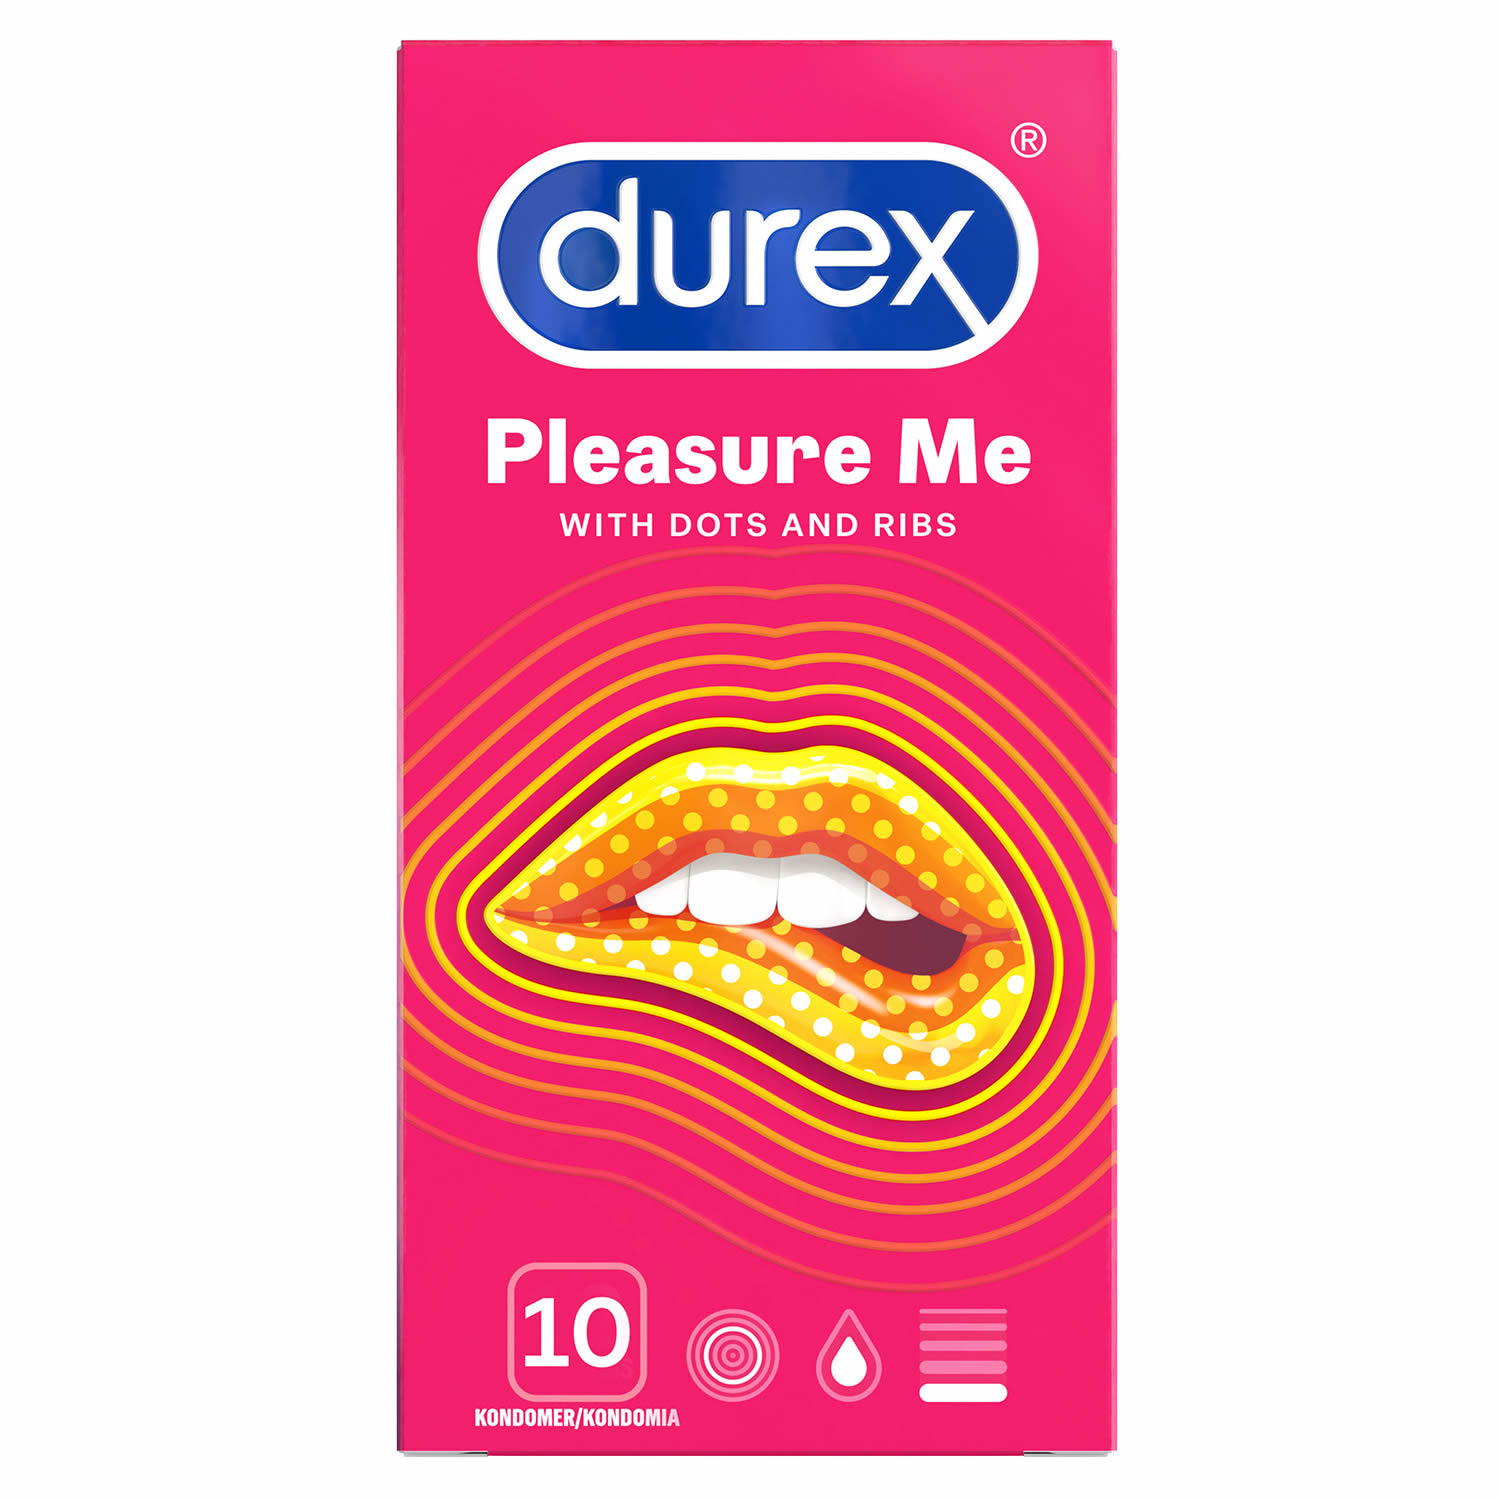 Durex Pleasure Me Kondom - Gerippt und genoppt